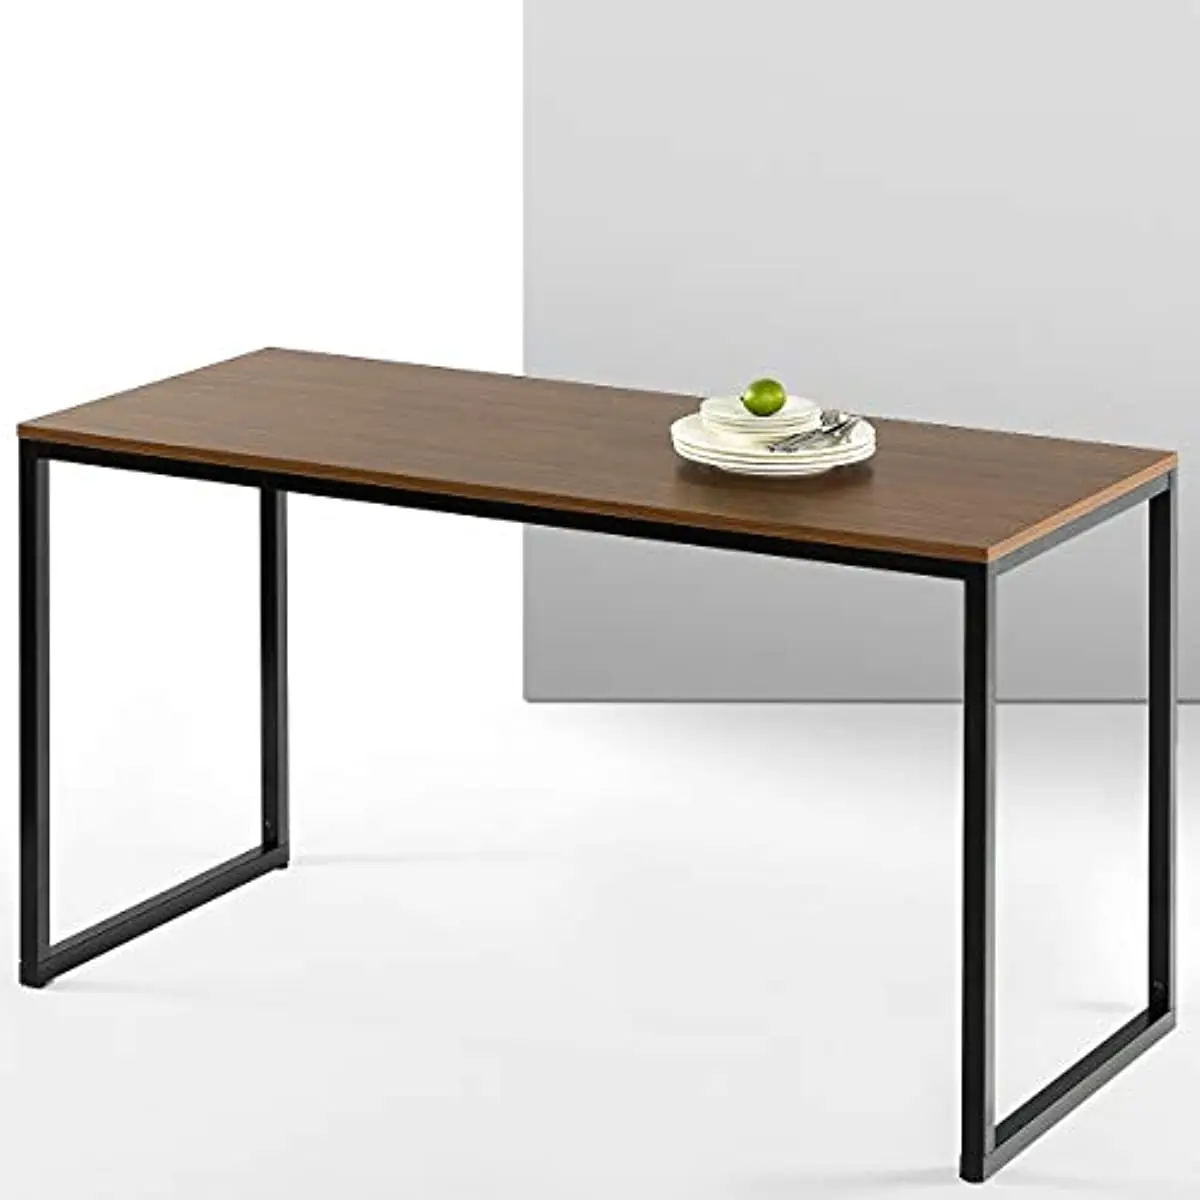 

ZINUS Дженнифер 55-дюймовый белый стол с рамой/Компьютерная рабочая станция/офисный стол/обеденный стол/легкая сборка, натуральный